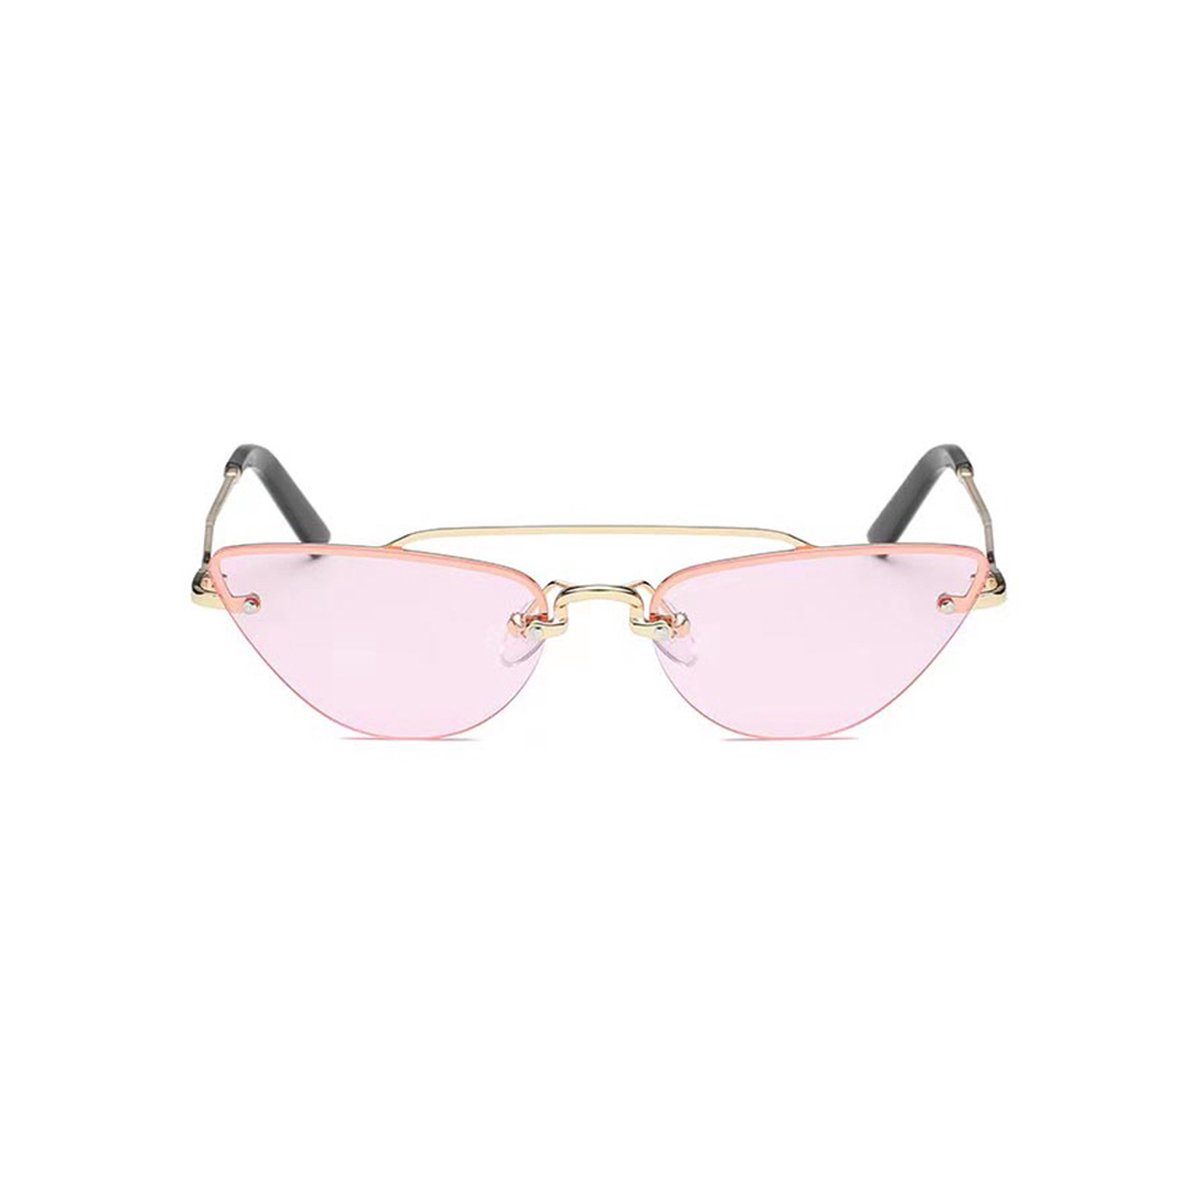 Freaky Glasses - Zonnebril Cat Eye - Festivalbril - Bril - Feest - Glasses - Heren - Dames - Unisex - Kunststof - Metaal - roze